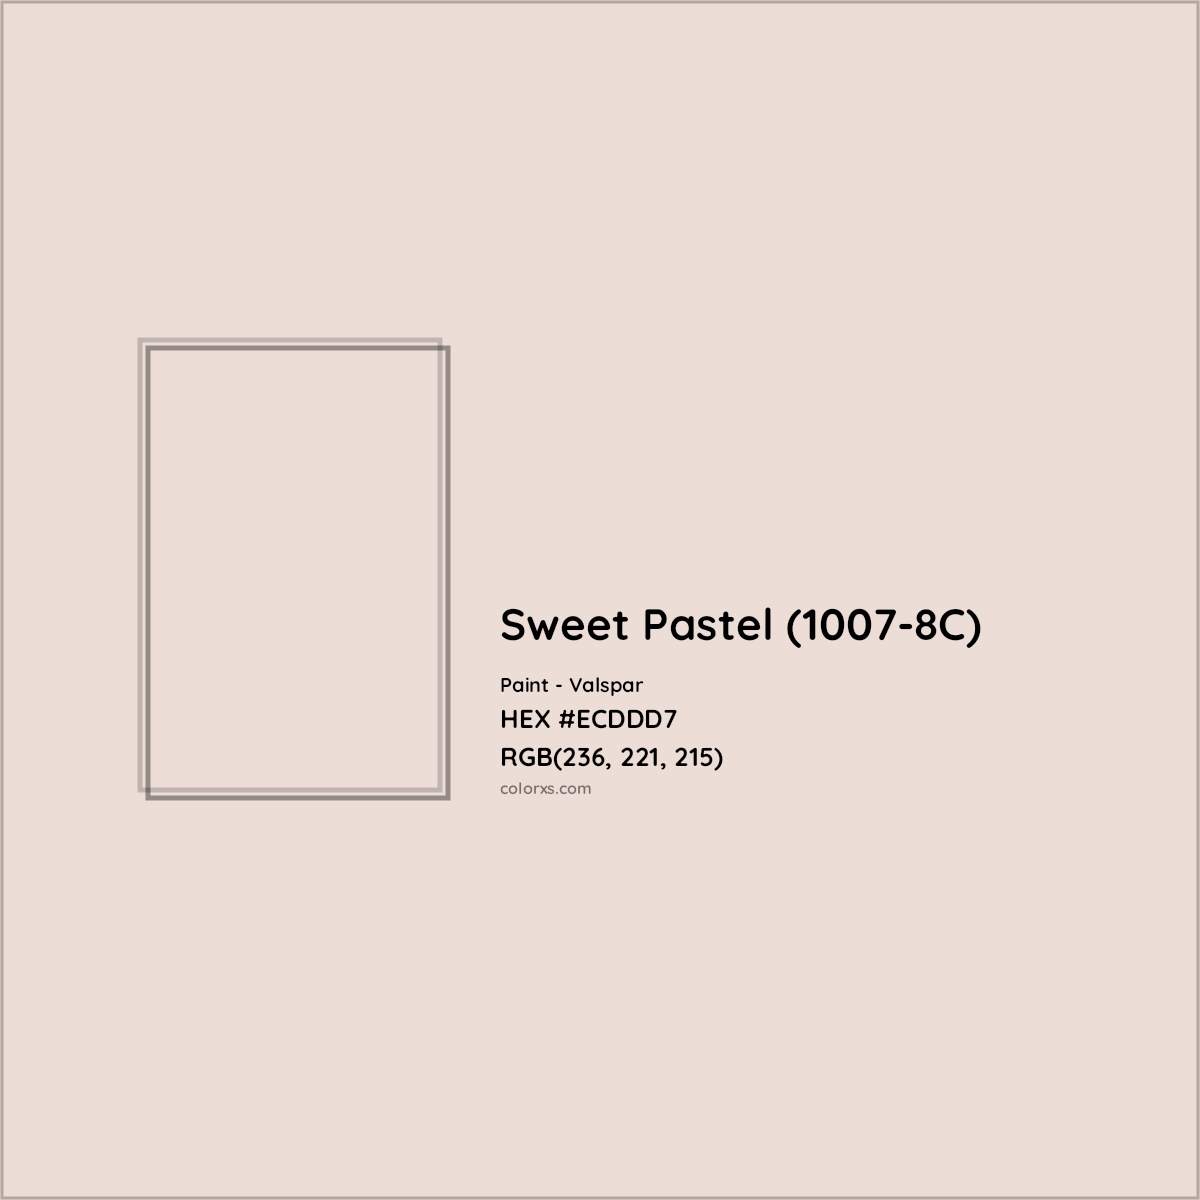 HEX #ECDDD7 Sweet Pastel (1007-8C) Paint Valspar - Color Code